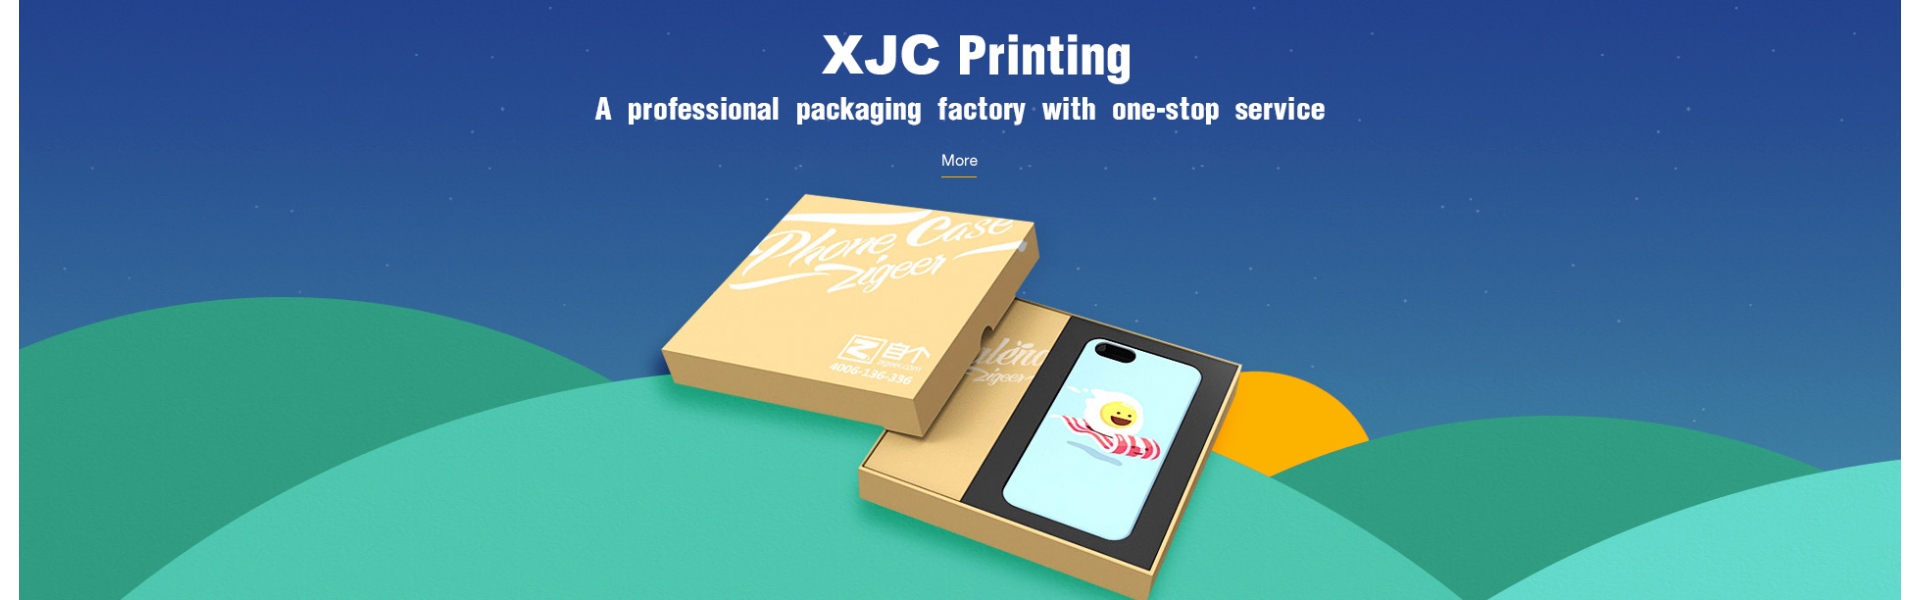 Shenzhen XJC Printing Co.Ltd